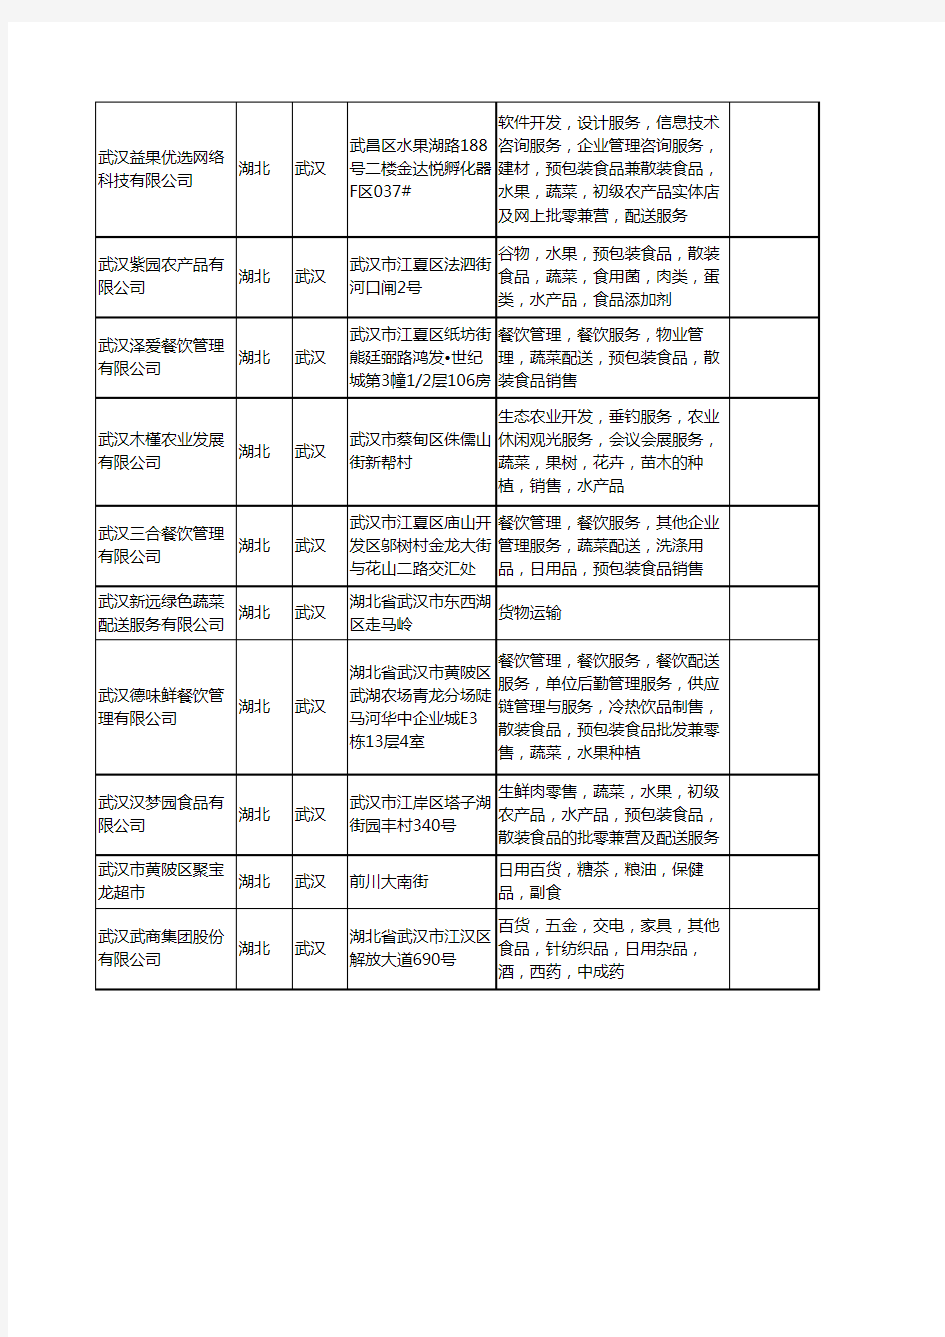 新版湖北省武汉蔬菜配送服务工商企业公司商家名录名单联系方式大全19家